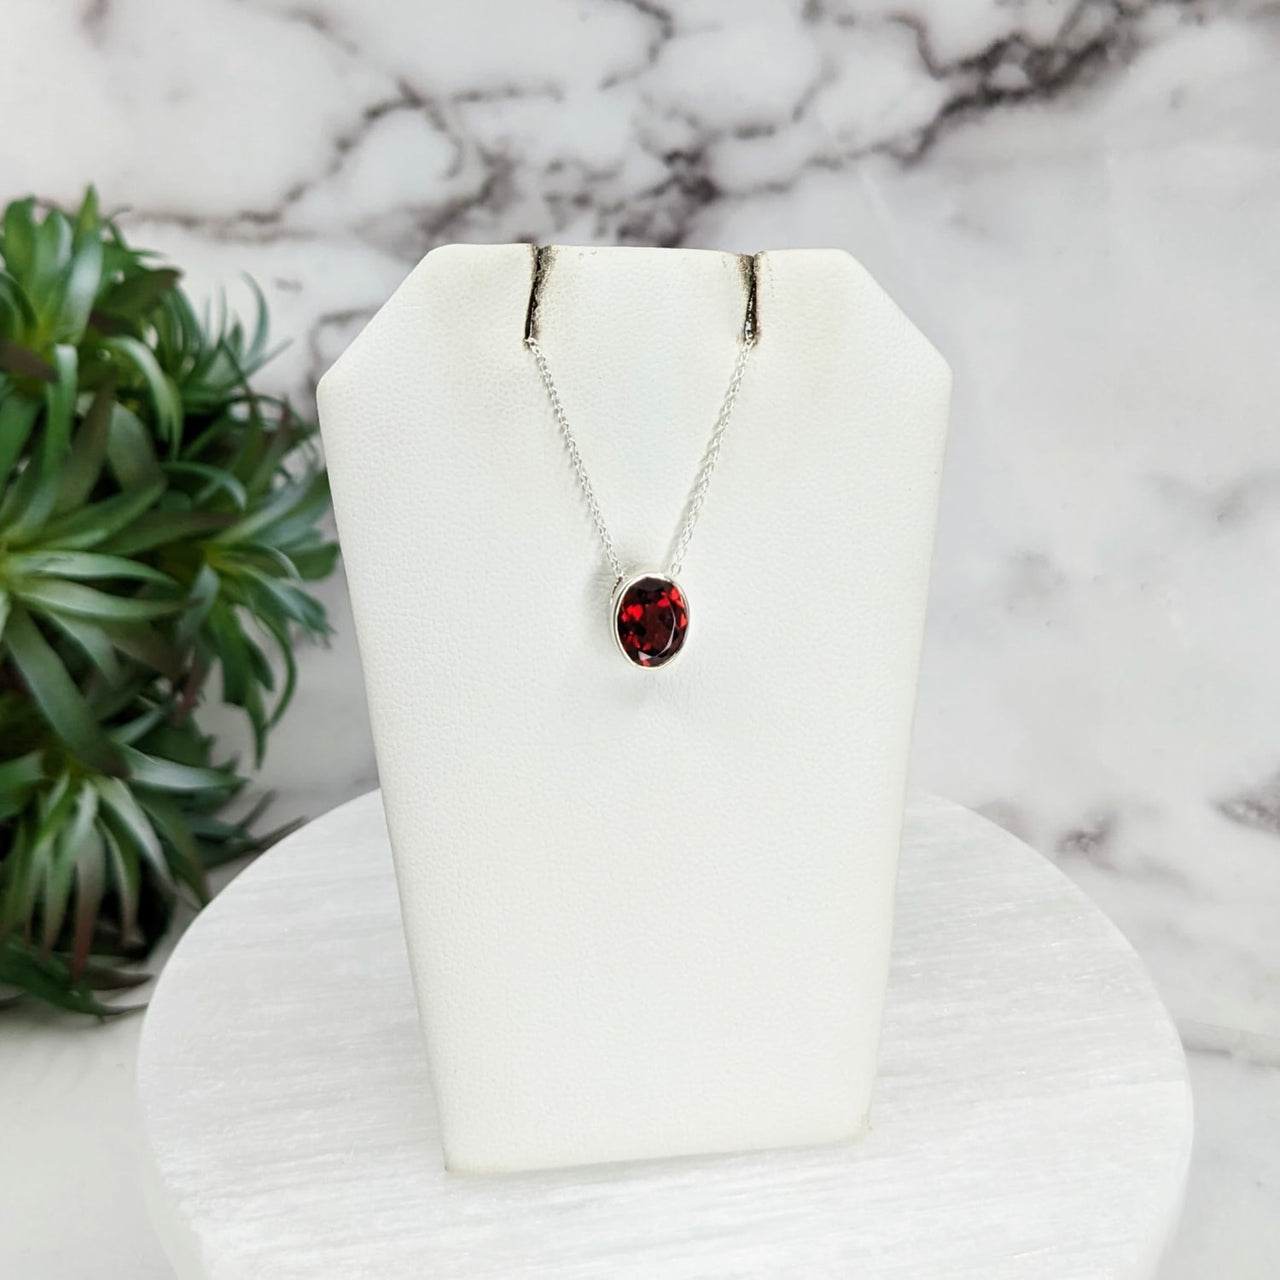 Red garnet necklace on white stand - Garnet Faceted Necklace Sterling Silver Slider #LV3250